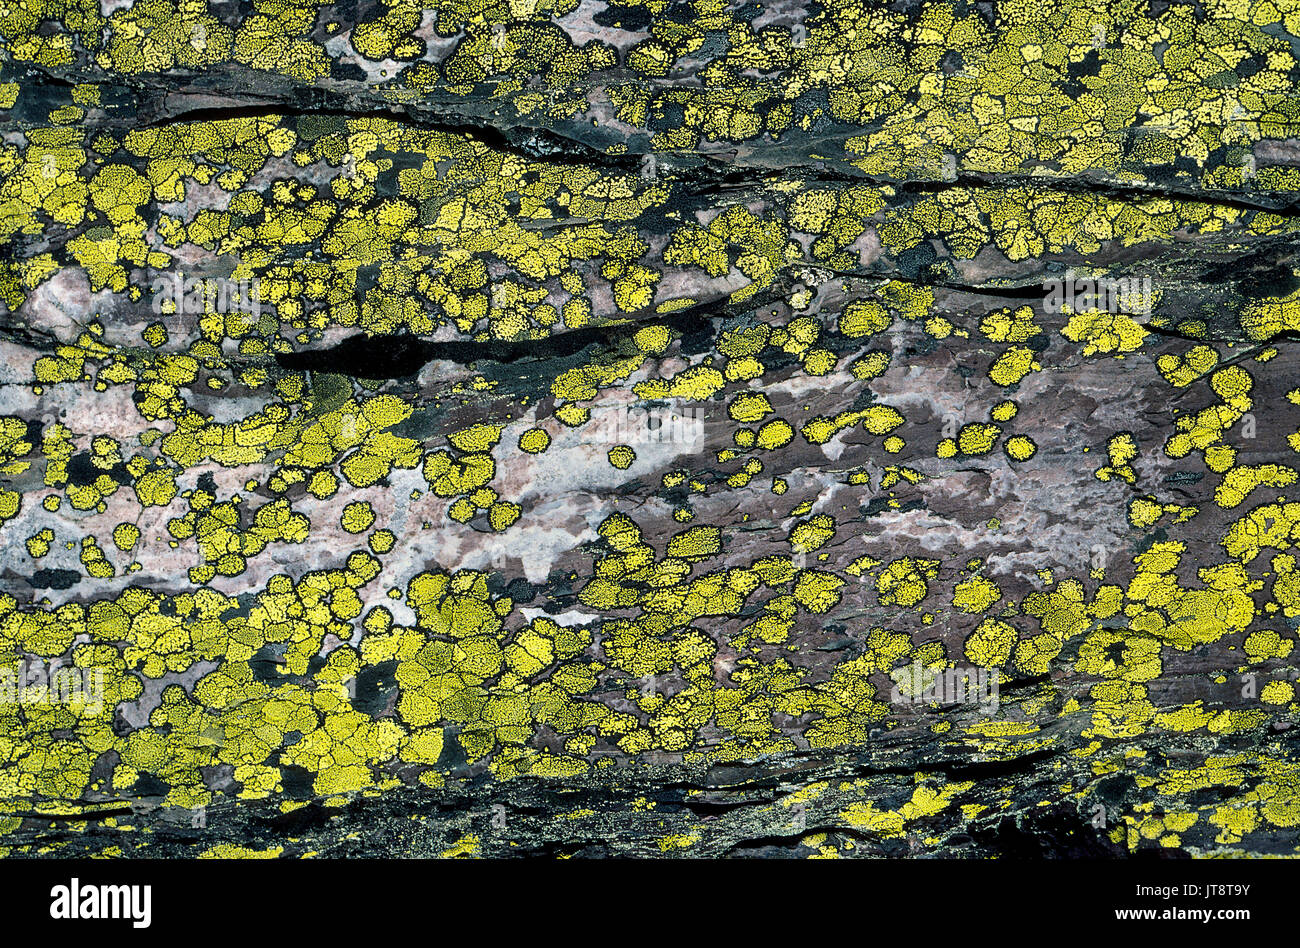 Il giallo di licheni crescono su una grande roccia facendo un interessante per lo studio della natura, come pure un intrigante sfondo. Gli organismi viventi sono una combinazione di un fungo che ha un rapporto di simbiosi con un alga o di un batterio. Il Lichen è considerata una delle più antiche forme di vita e risale almeno 400 milioni di anni. Questi sono chiamati mappa licheni (Rhizocarpon geographicum) e ciascun patch giallo ha un bordo nero di spore. Foto Stock